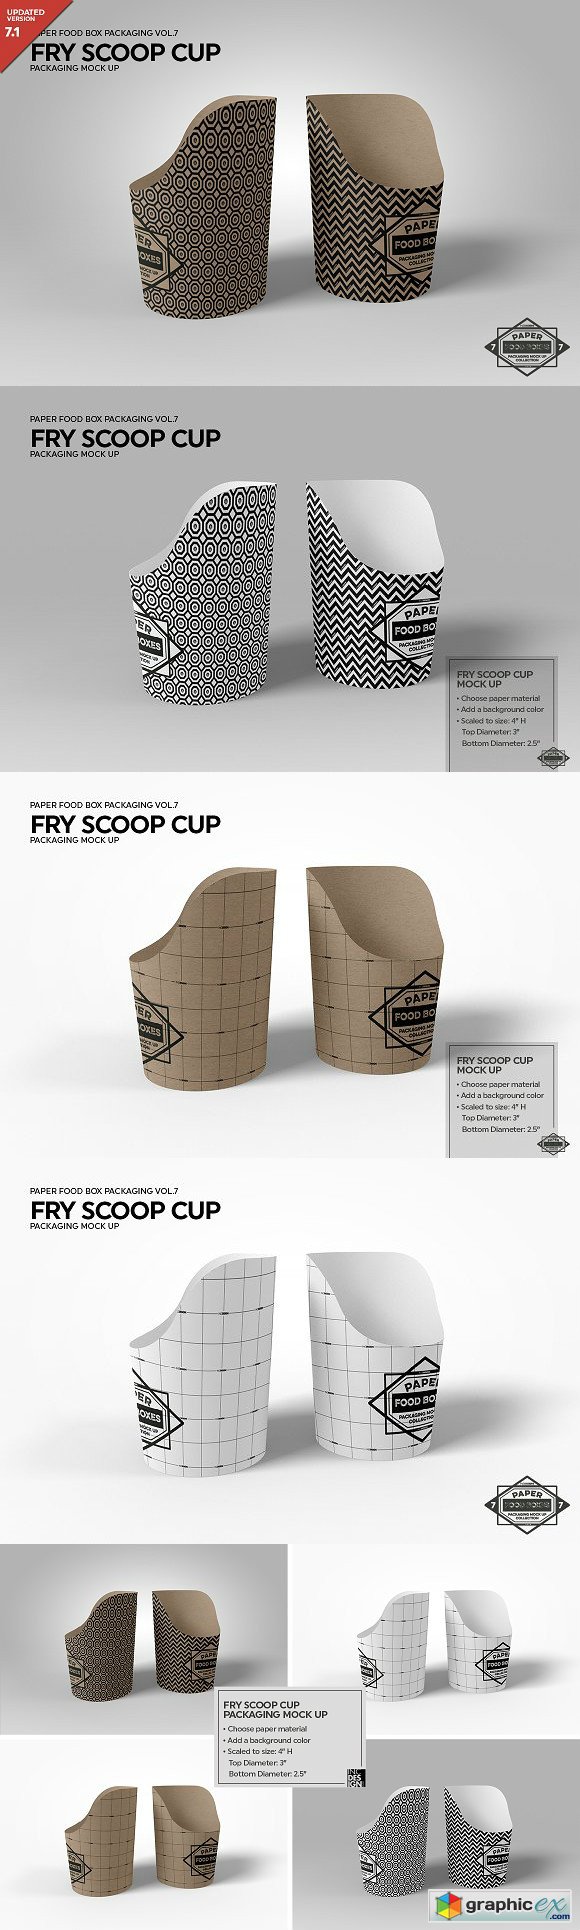 Paper Scoop Cup Packaging Mock Up